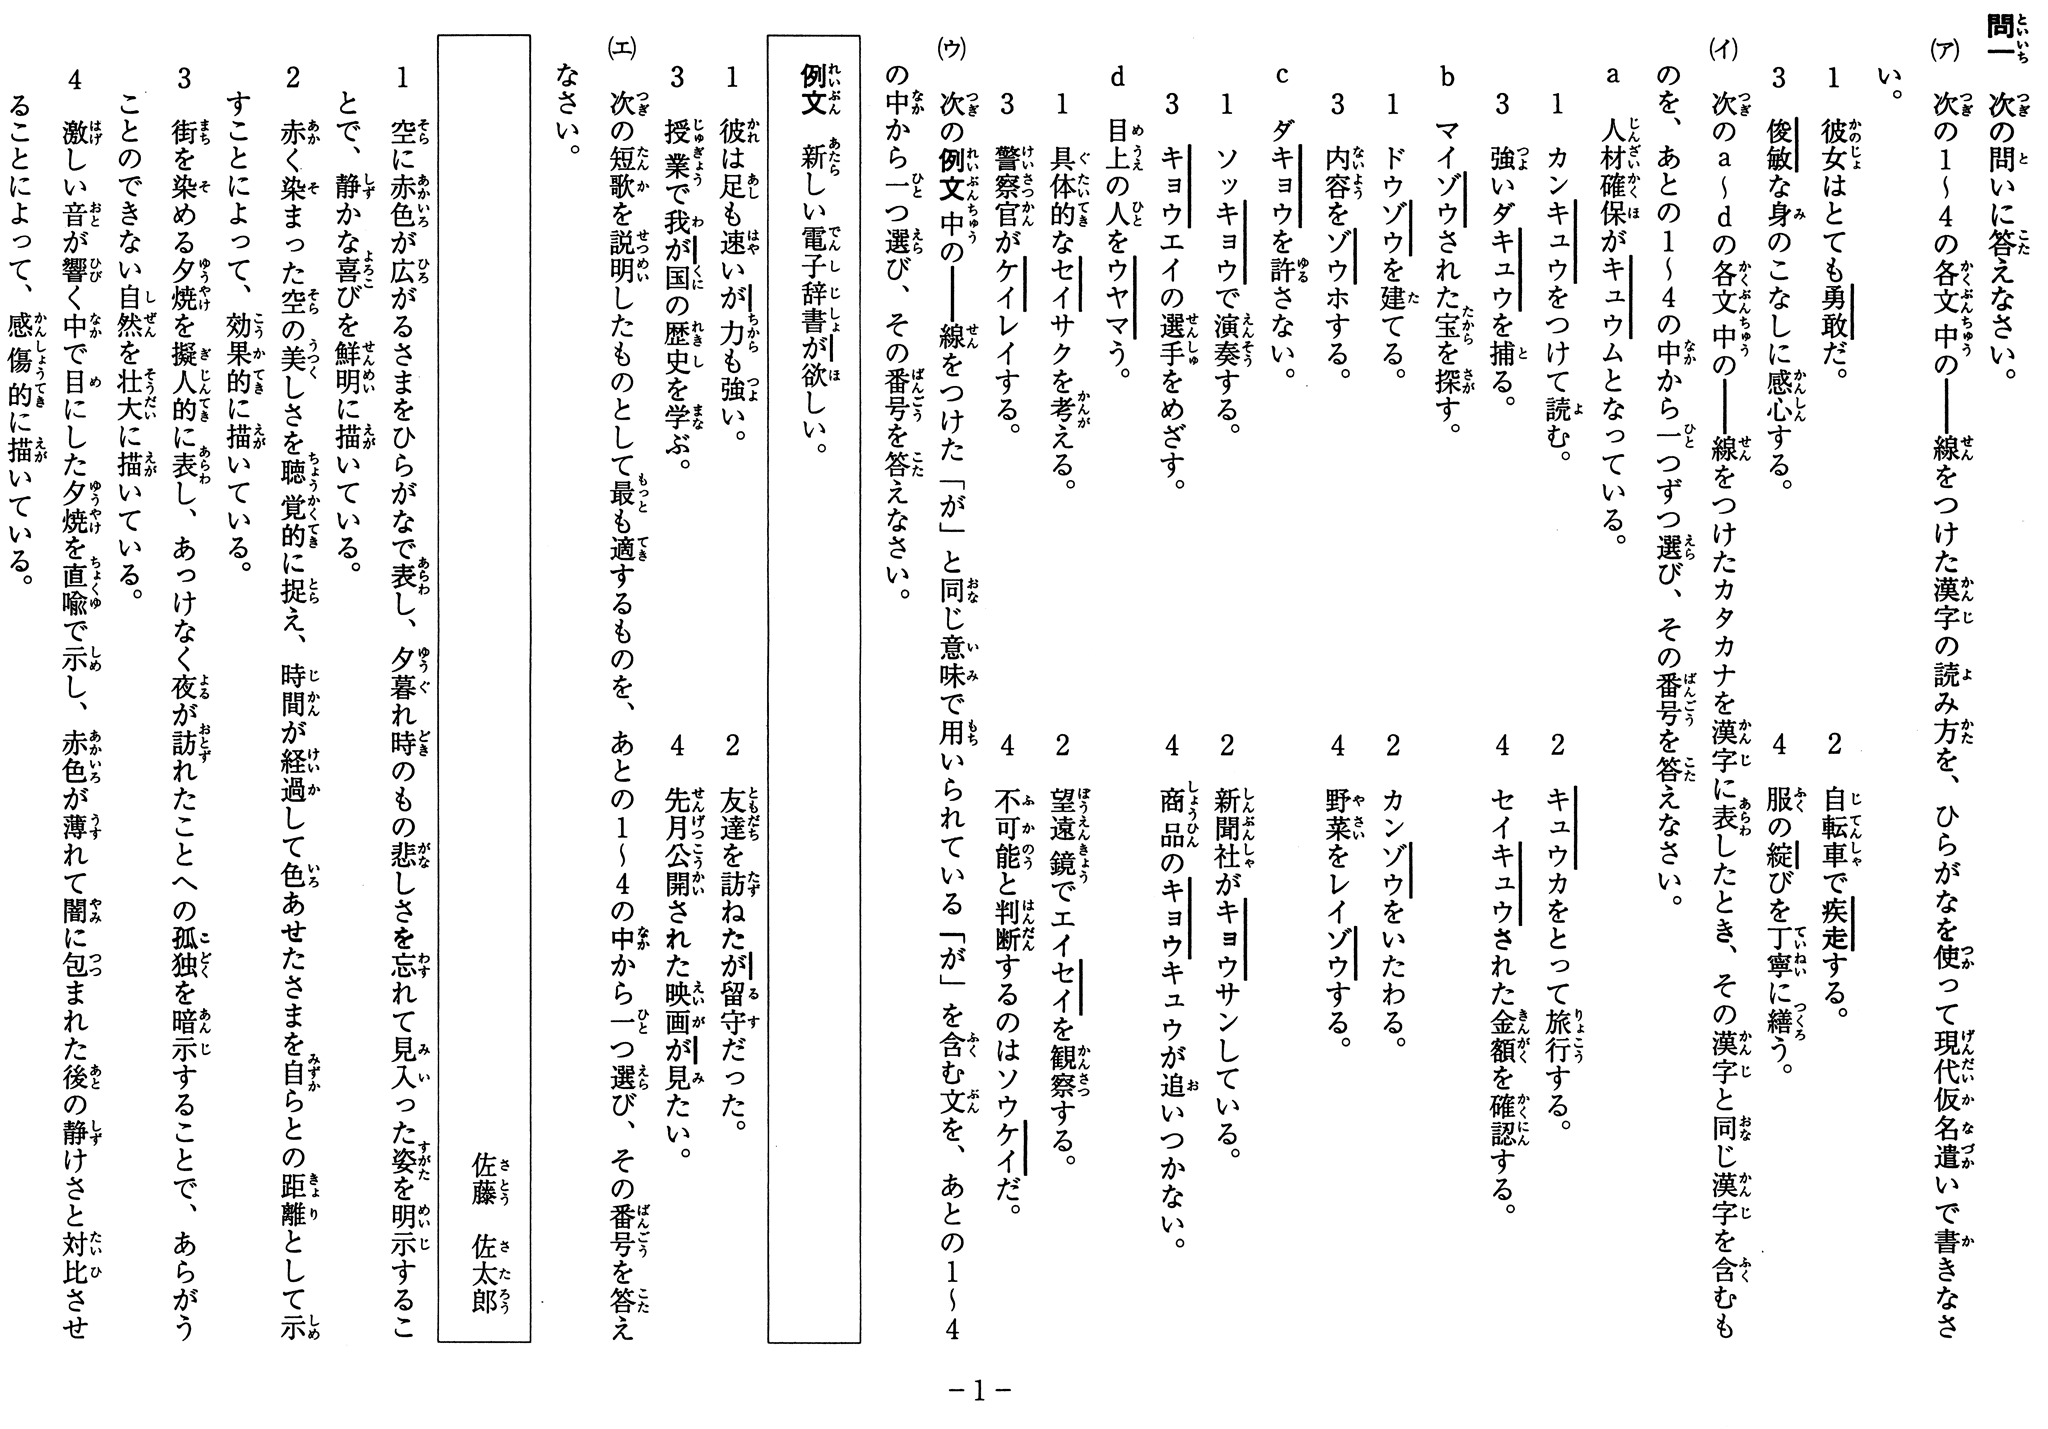 神奈川県公立高校入試学力検査 ルビ付き問題用紙の例 | カナガク